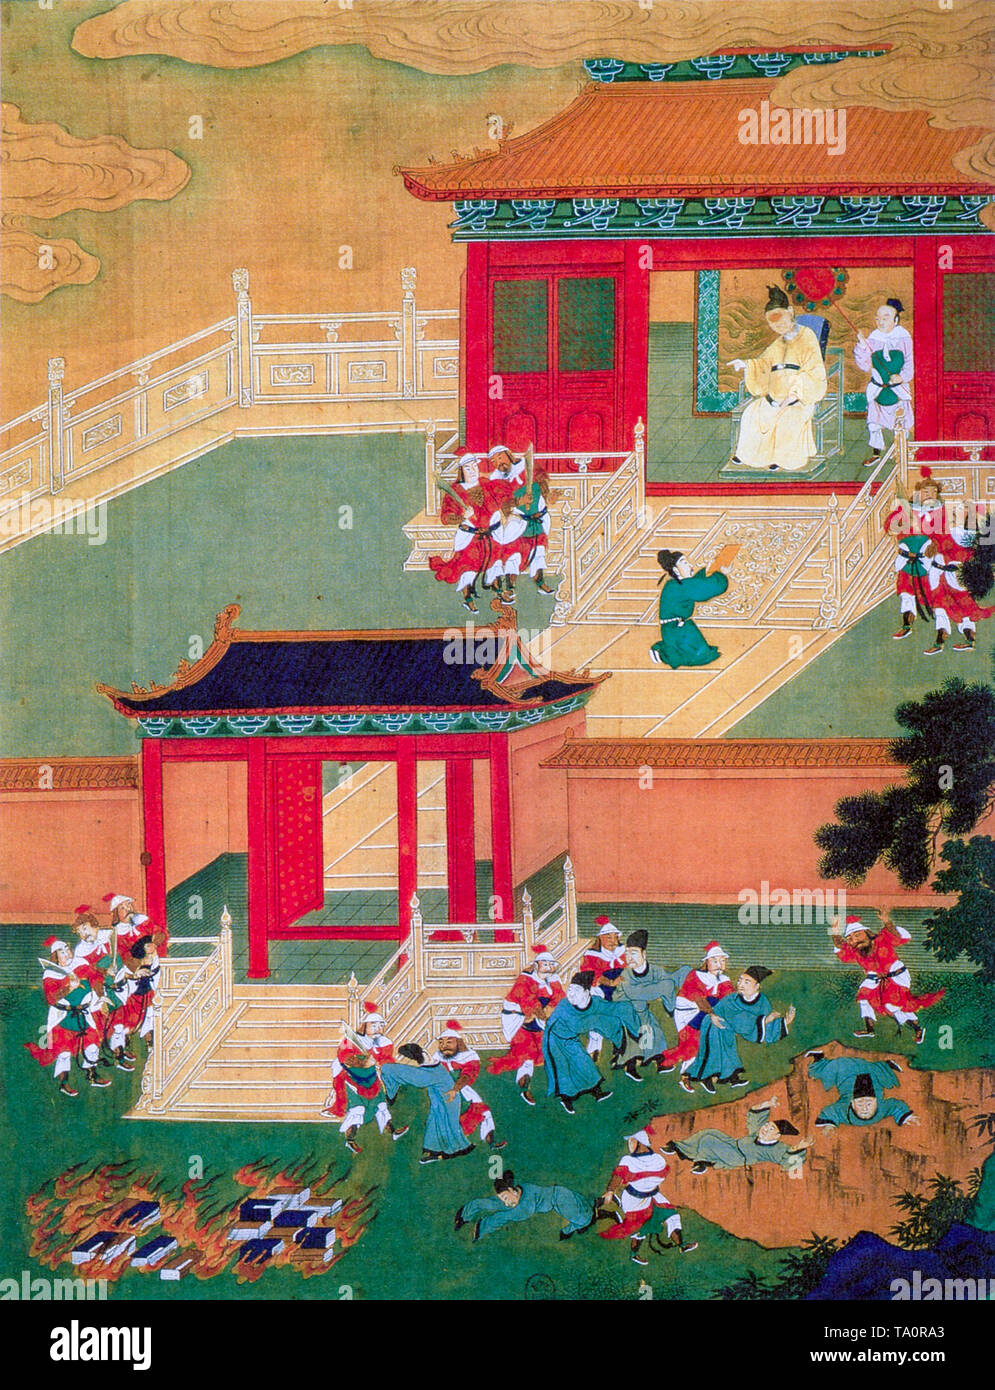 Verbrennen von Büchern und lebendig begraben von konfuzianischen Gelehrten in China unter Qin Shi Huang in 213 BC, Malerei, 18. Jahrhundert Stockfoto